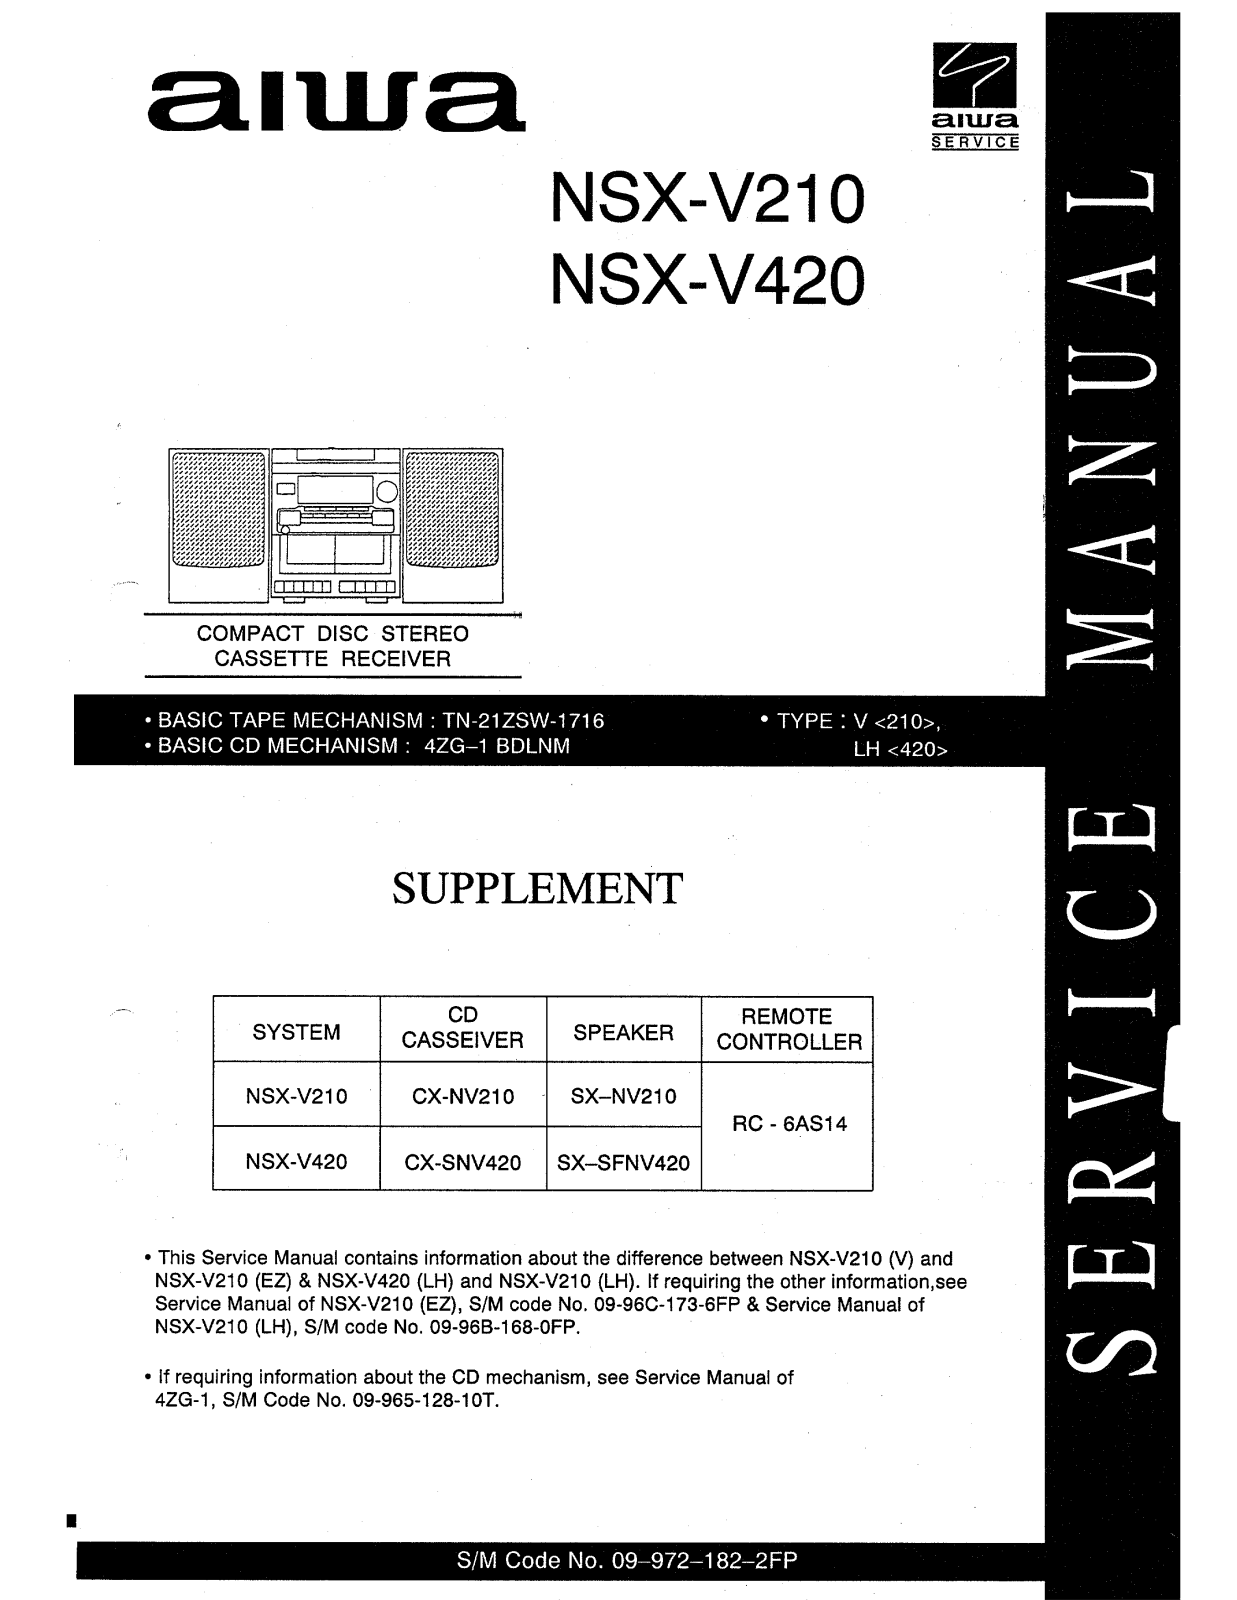 Aiwa NSX-V420, NSX-V210 Schematic